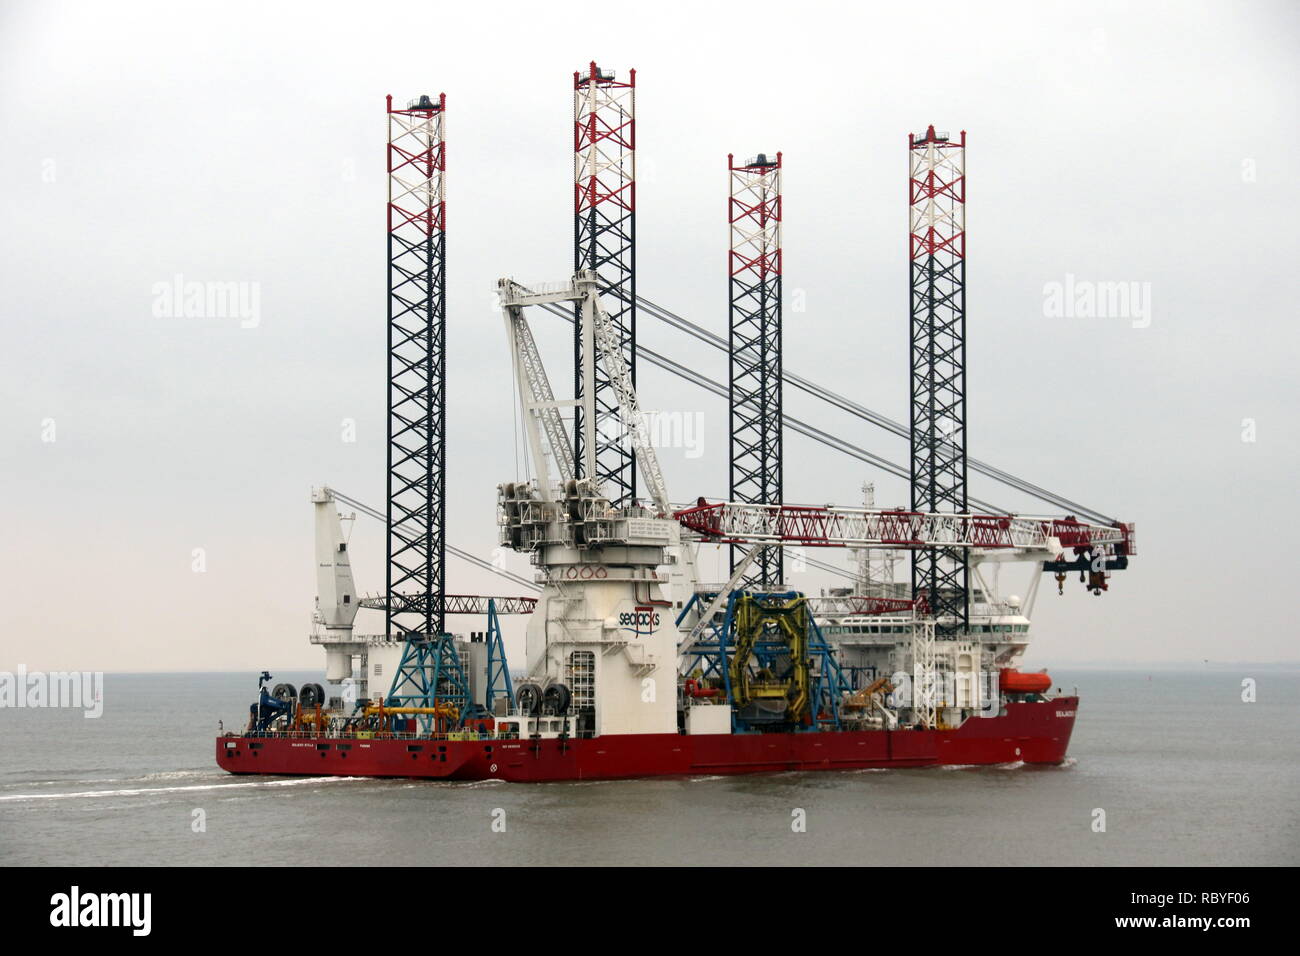 La construction d'éoliennes offshore navire Seajacks Scylla va atteindre le port de Cuxhaven le 29 décembre 2018 Banque D'Images